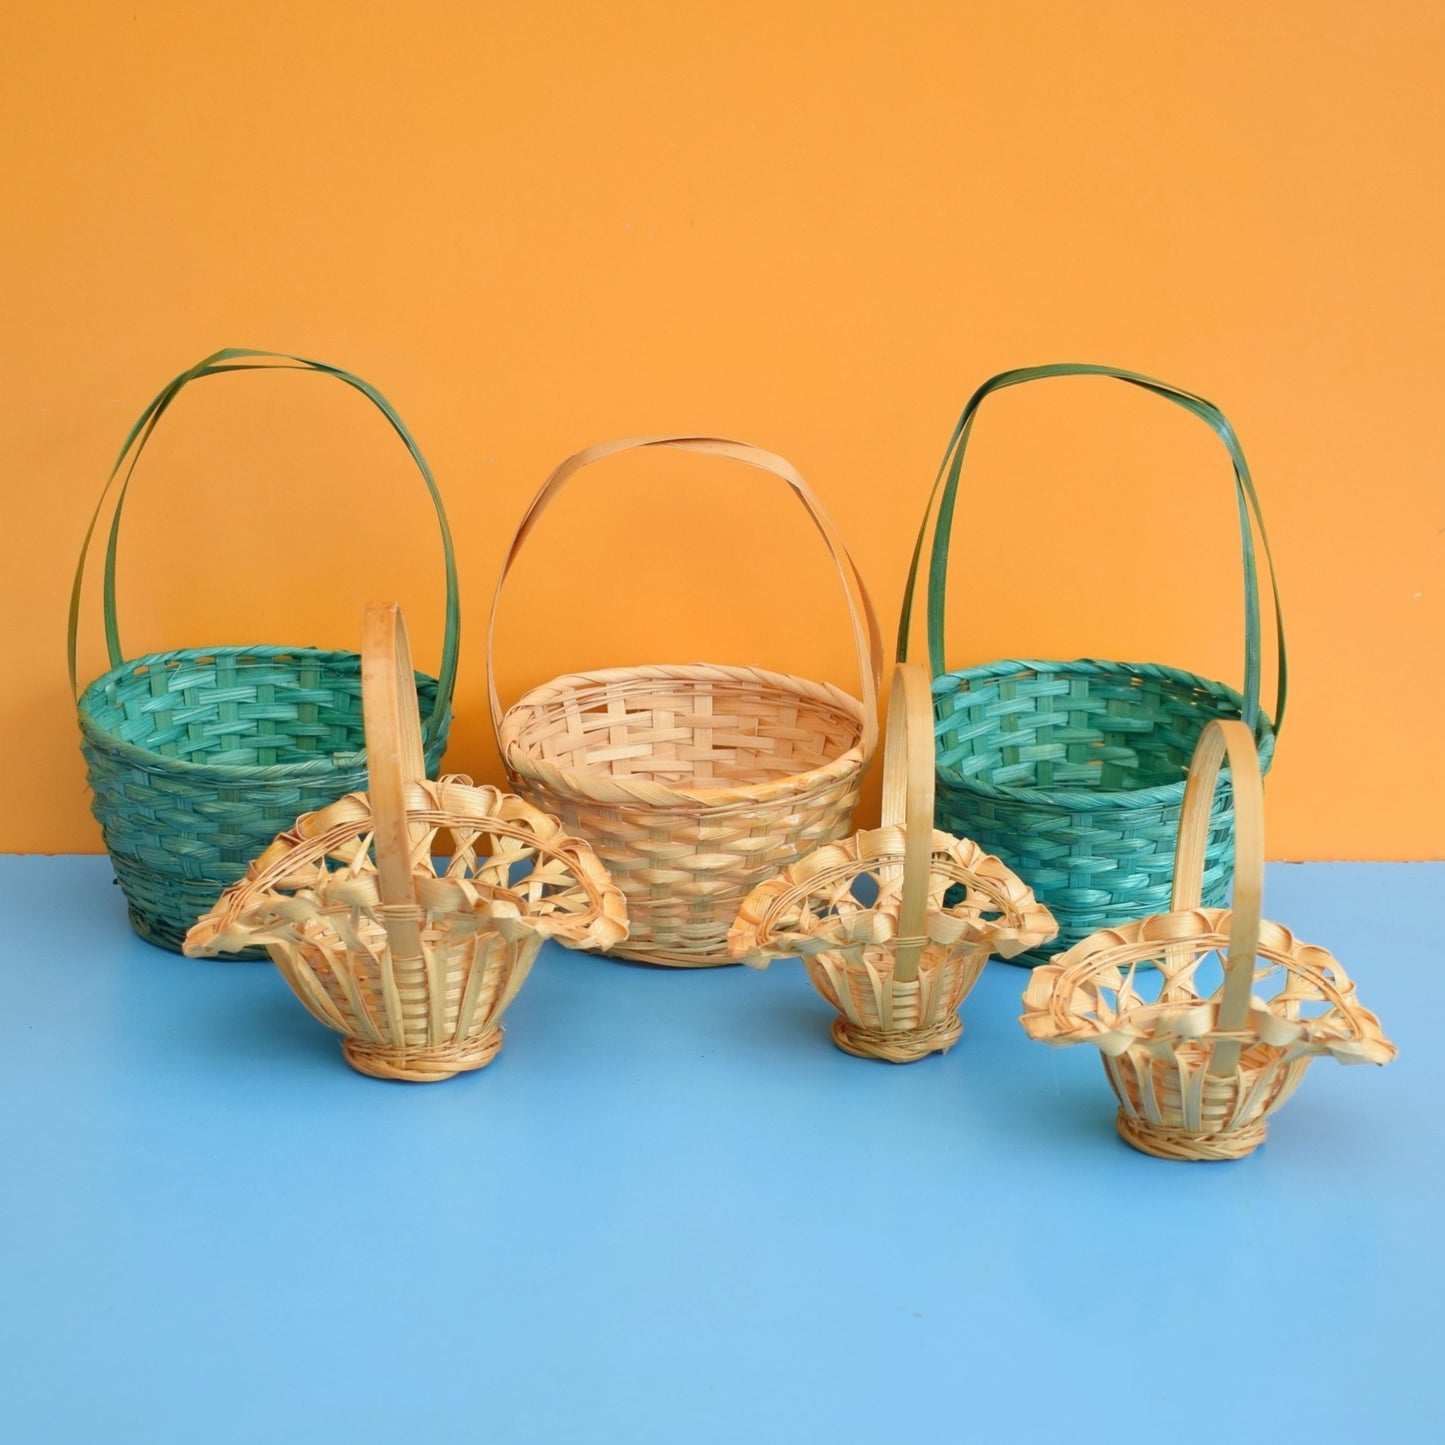 Vintage 1970s Wicker Easter Basket - Green / Natural